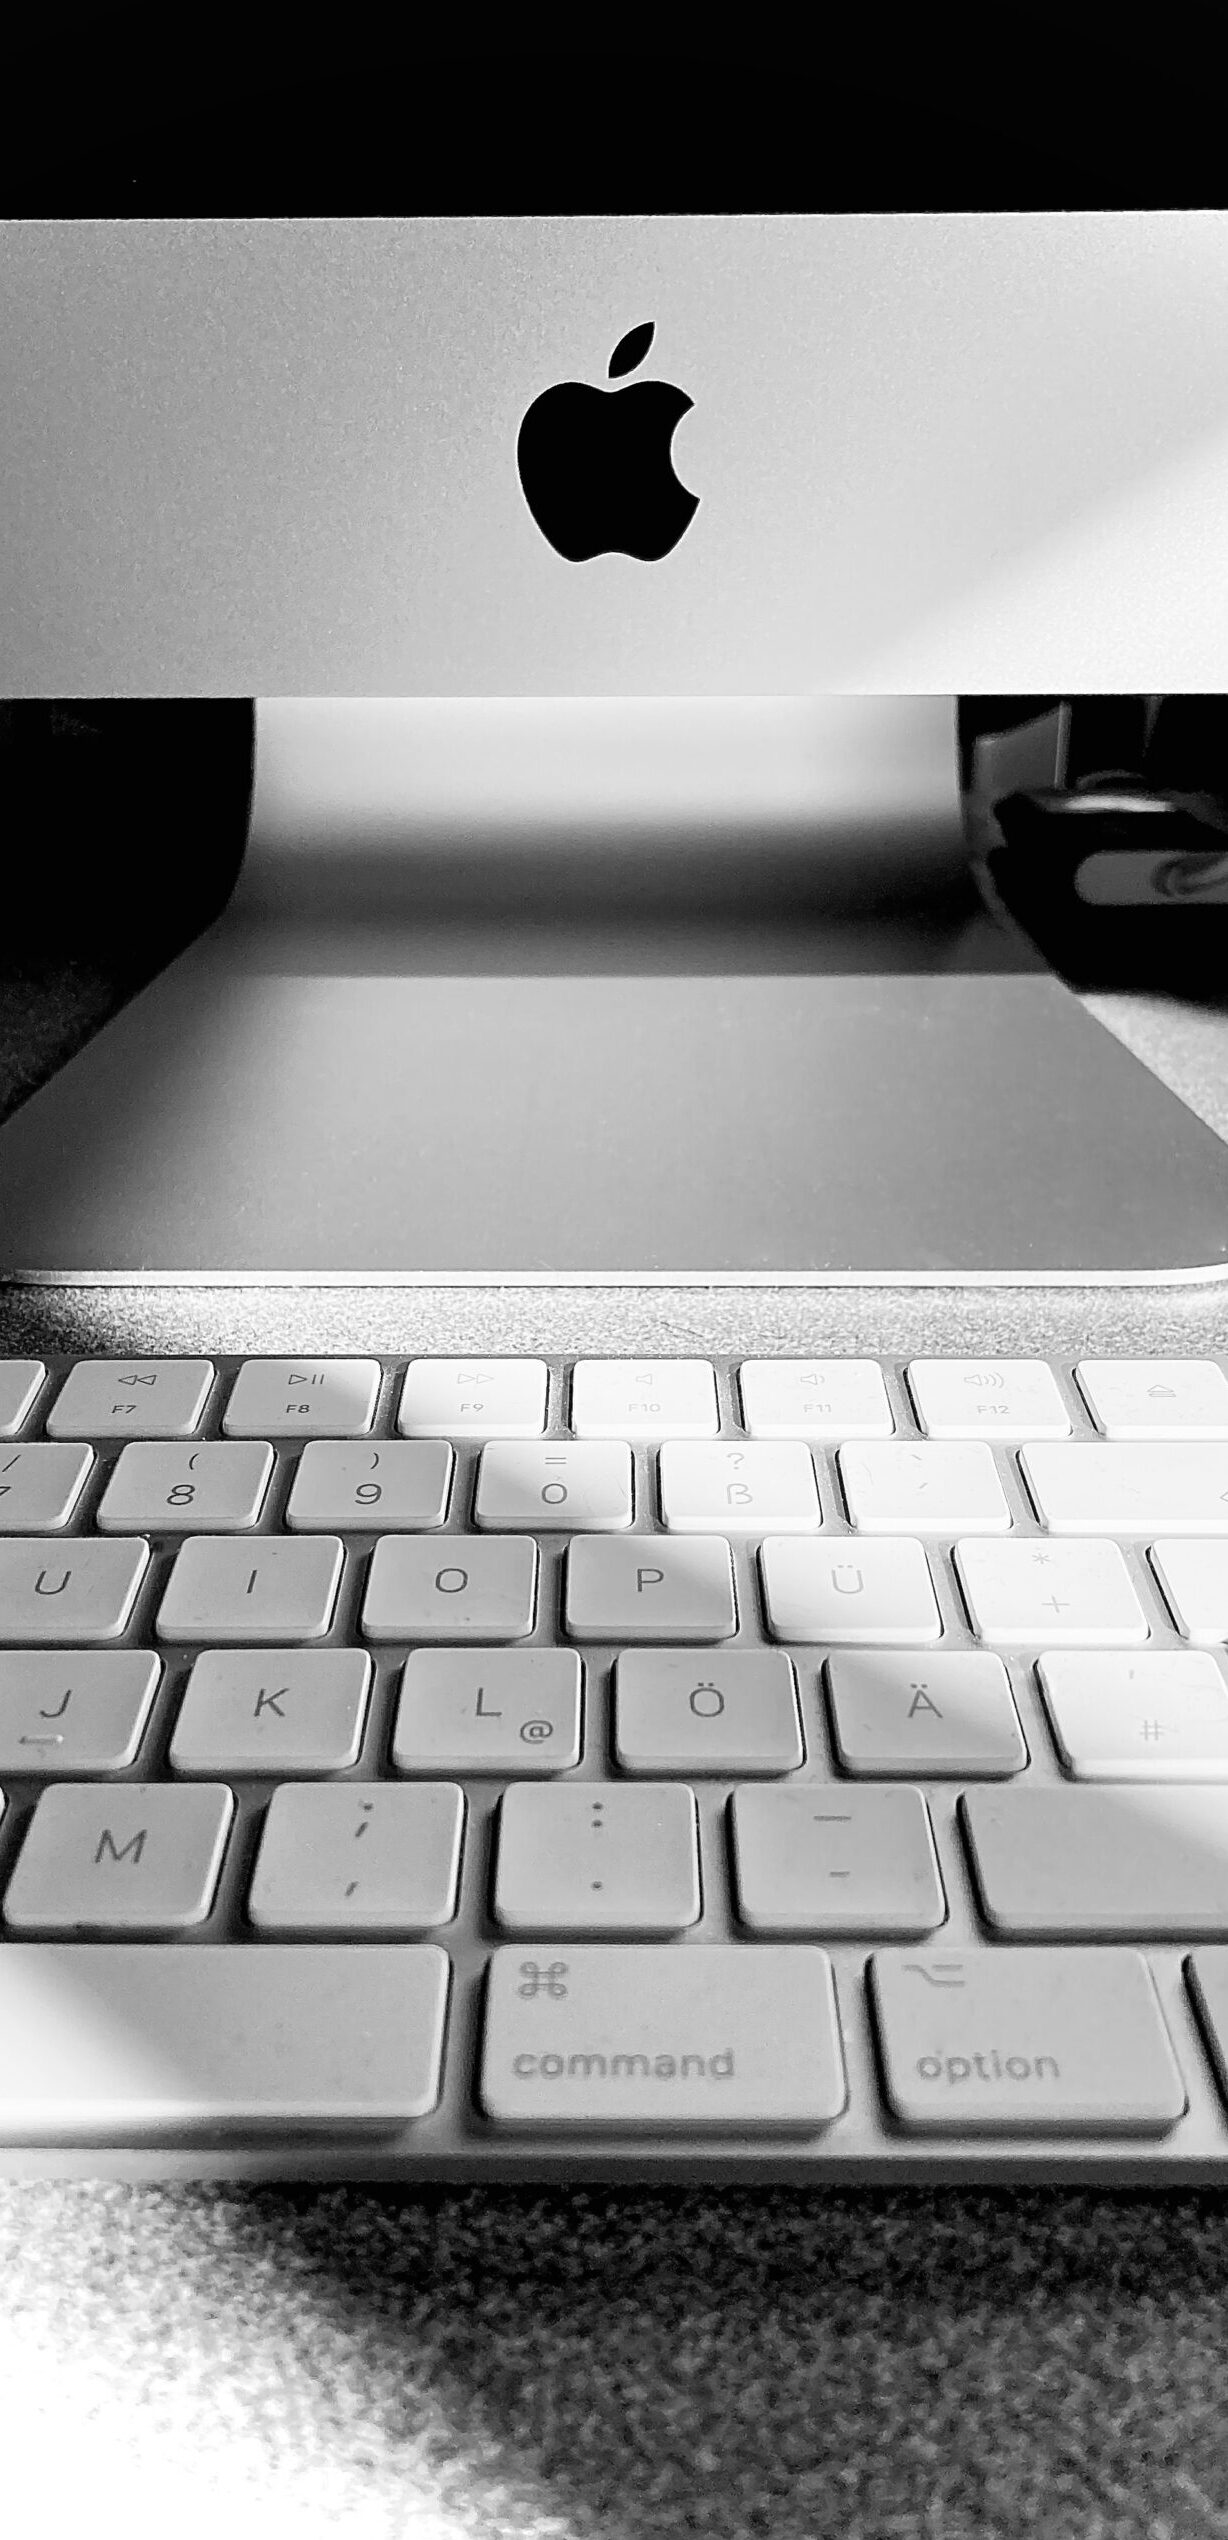 Schwarz-Weiß-Detailaufnahme eines Macintosh-Rechners mit Tastatur mit stimmungsvollem Licht-Schatten-Spiel